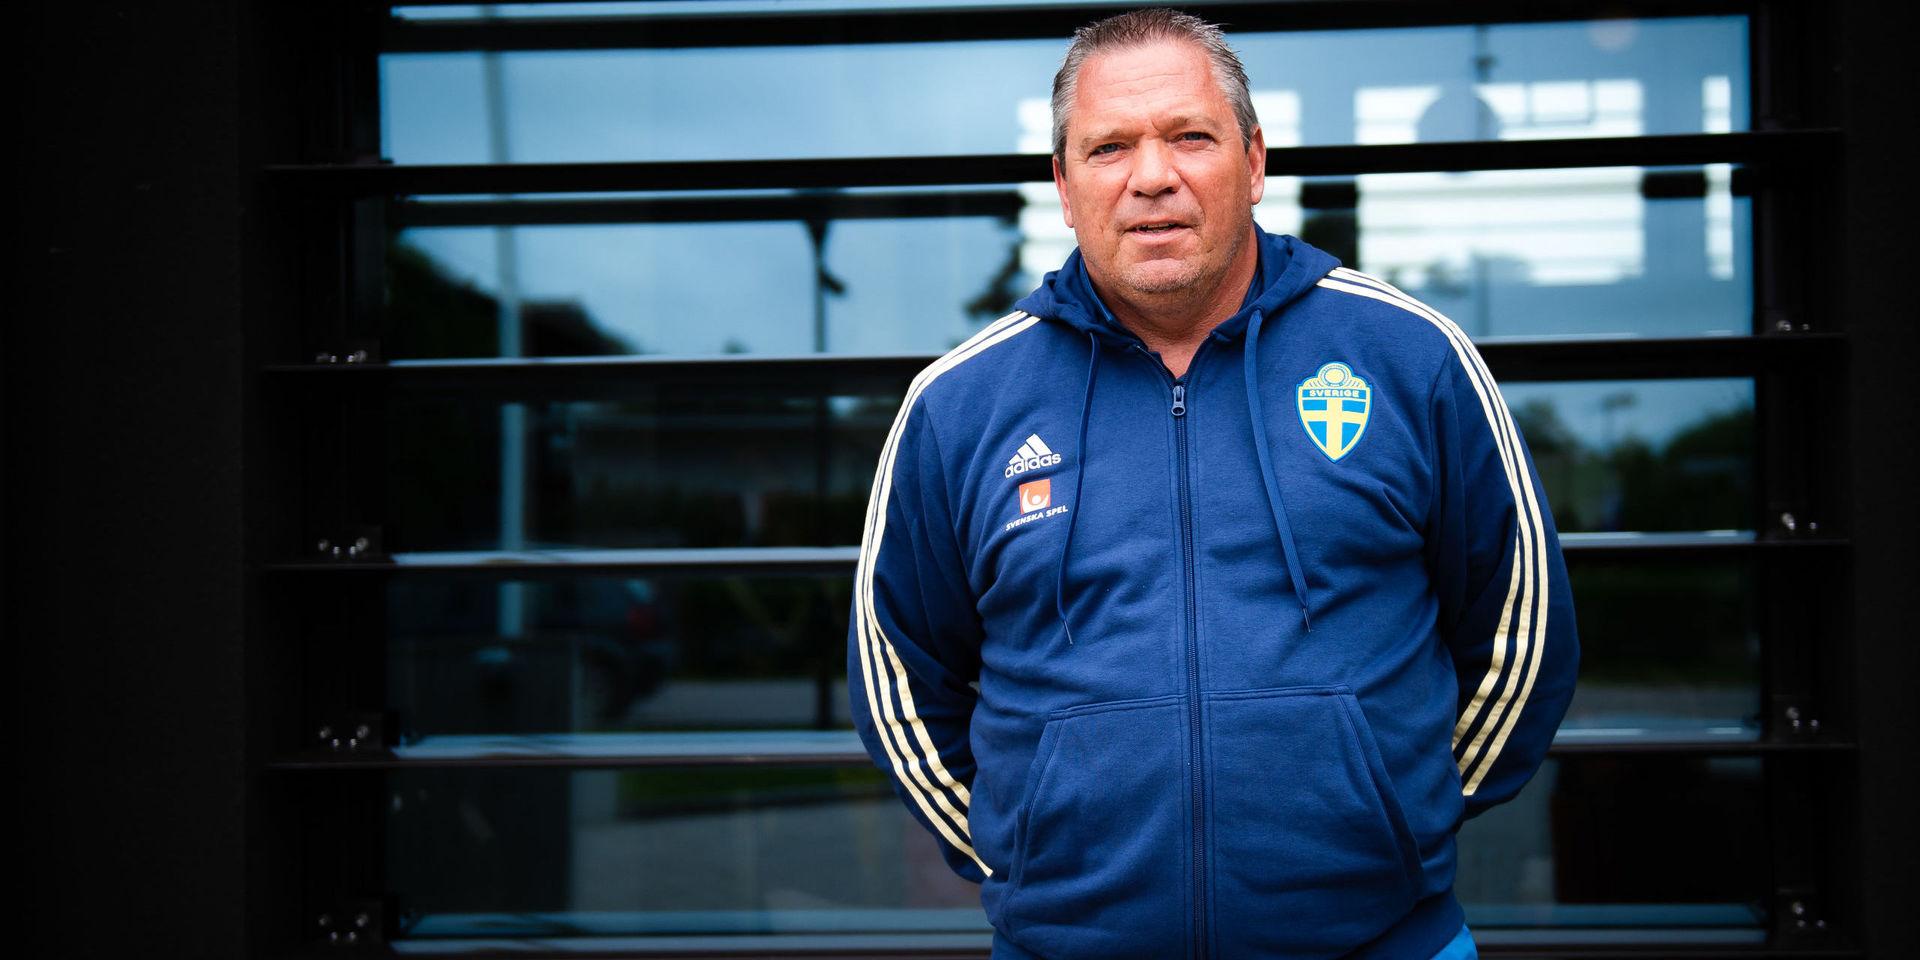 Martin Fredman, säkerhetschef på Svenska Fotbollförbundet, berättar att kraven från svenskt håll inför bortamatchen mot Rumänien är större än normalt och kan jämföras med kraven som ställs under ett stort mästerskap. 